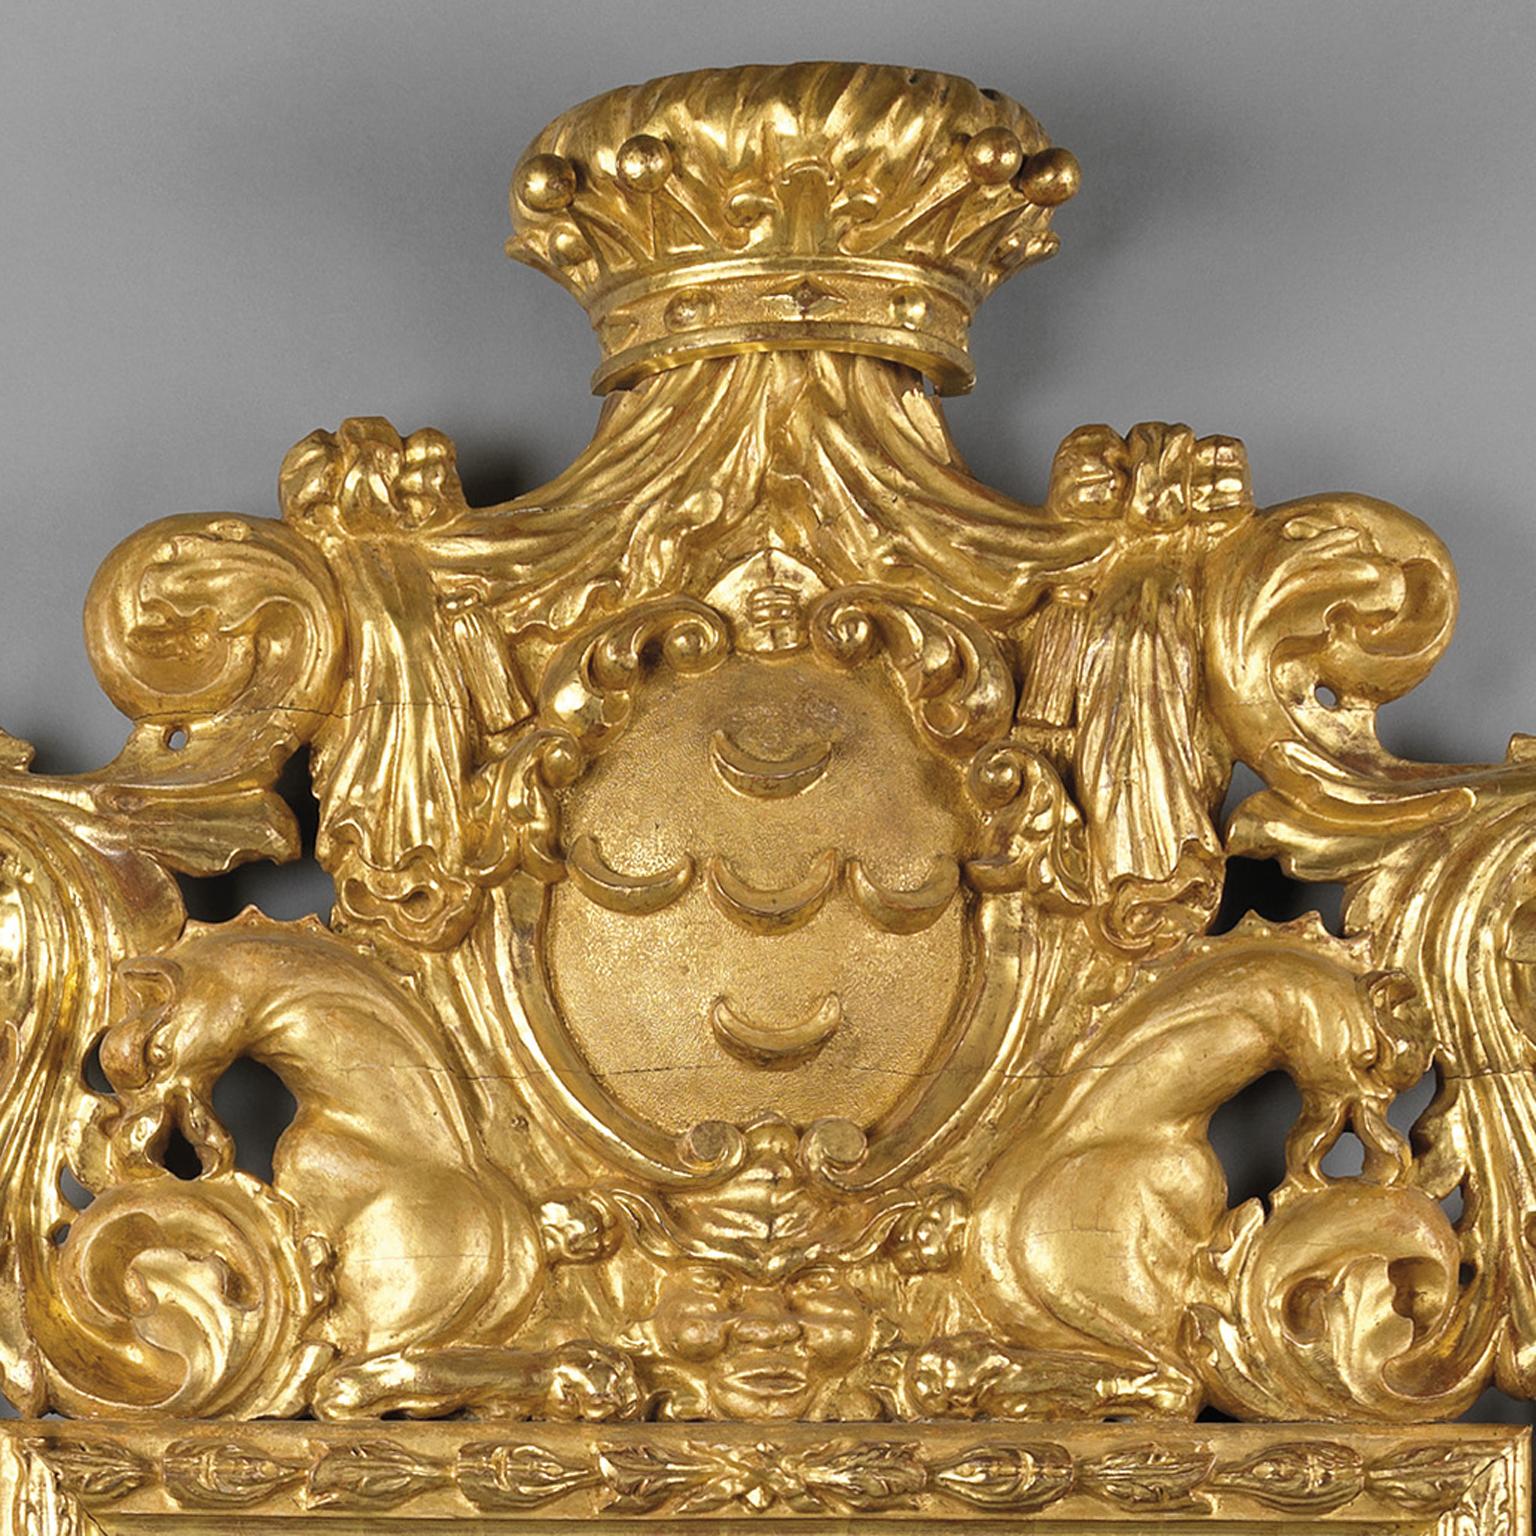 Un grand et impressionnant miroir en bois doré sculpté de style baroque, la plaque de miroir rectangulaire sous une crête composée d'une couronne et d'un cartouche à croissant de lune flanqué de bêtes stylisées et d'un cadre à guirlande de feuilles